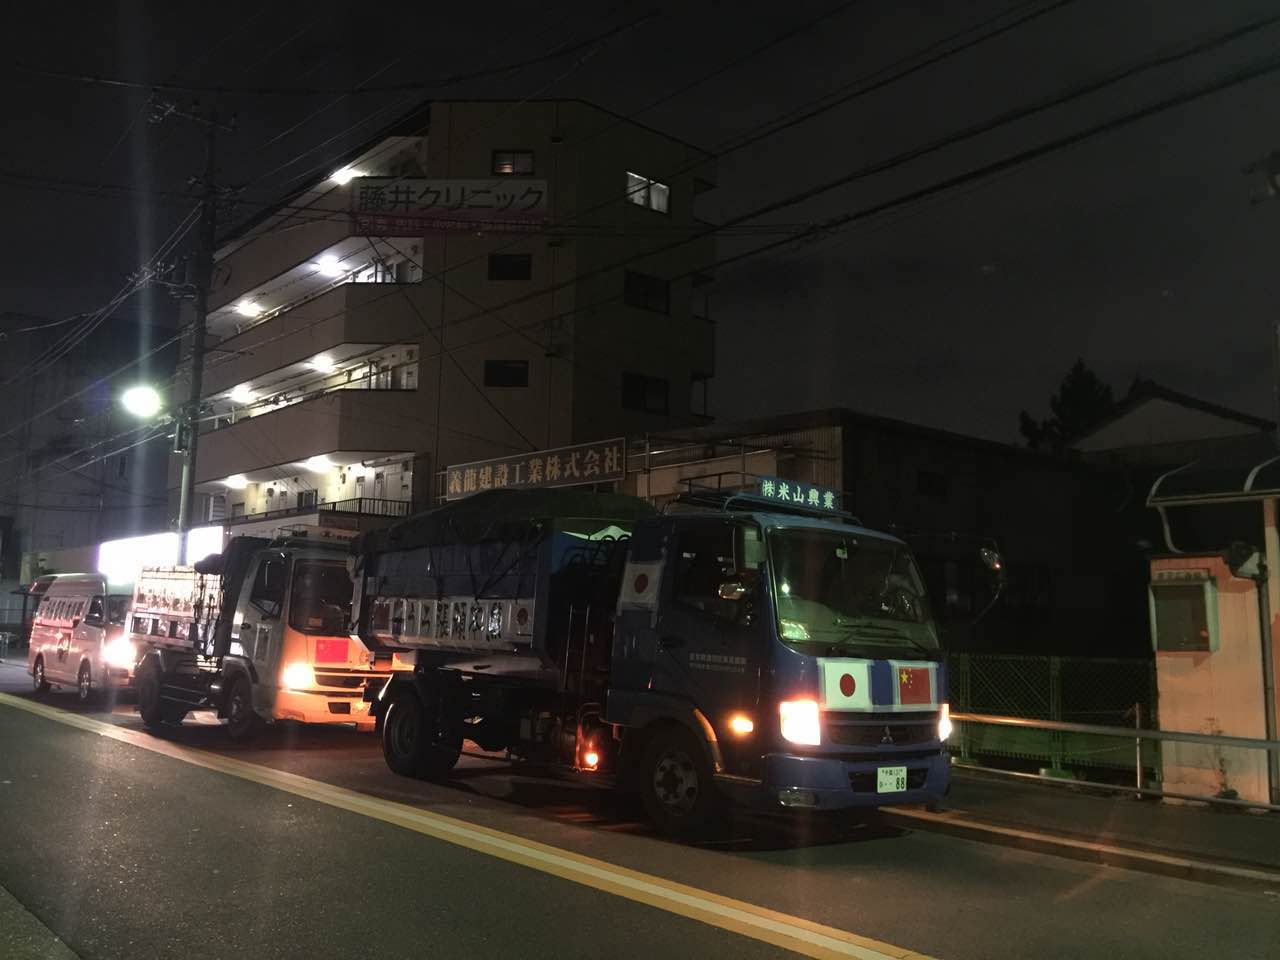 “熊本赈灾”支援队19日晚间从东京出发的情景。图片授权转载。